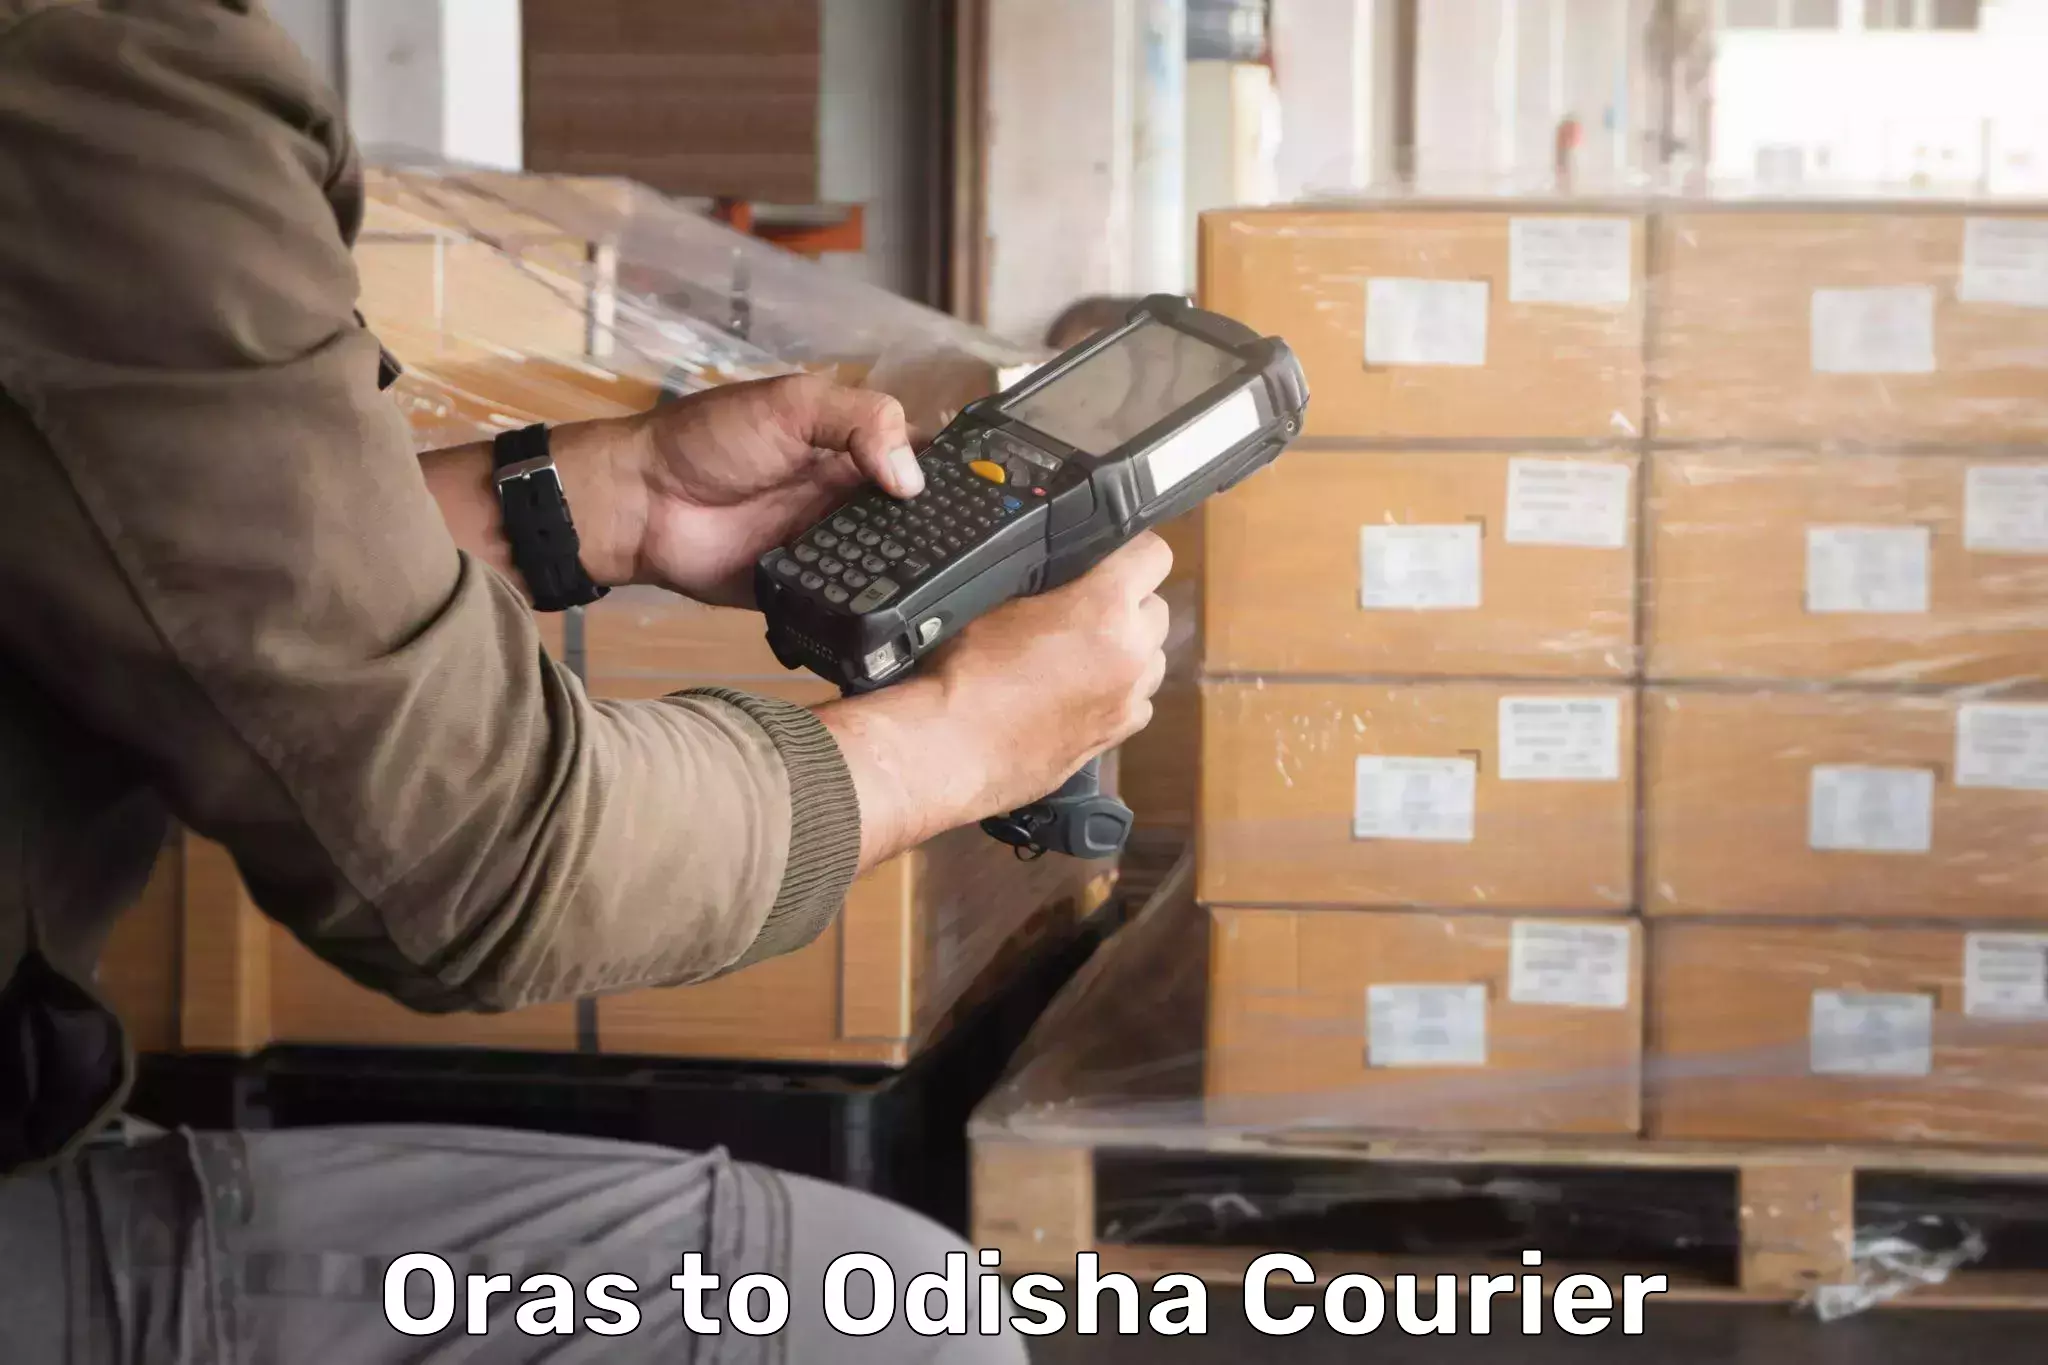 Logistics service provider Oras to Soro